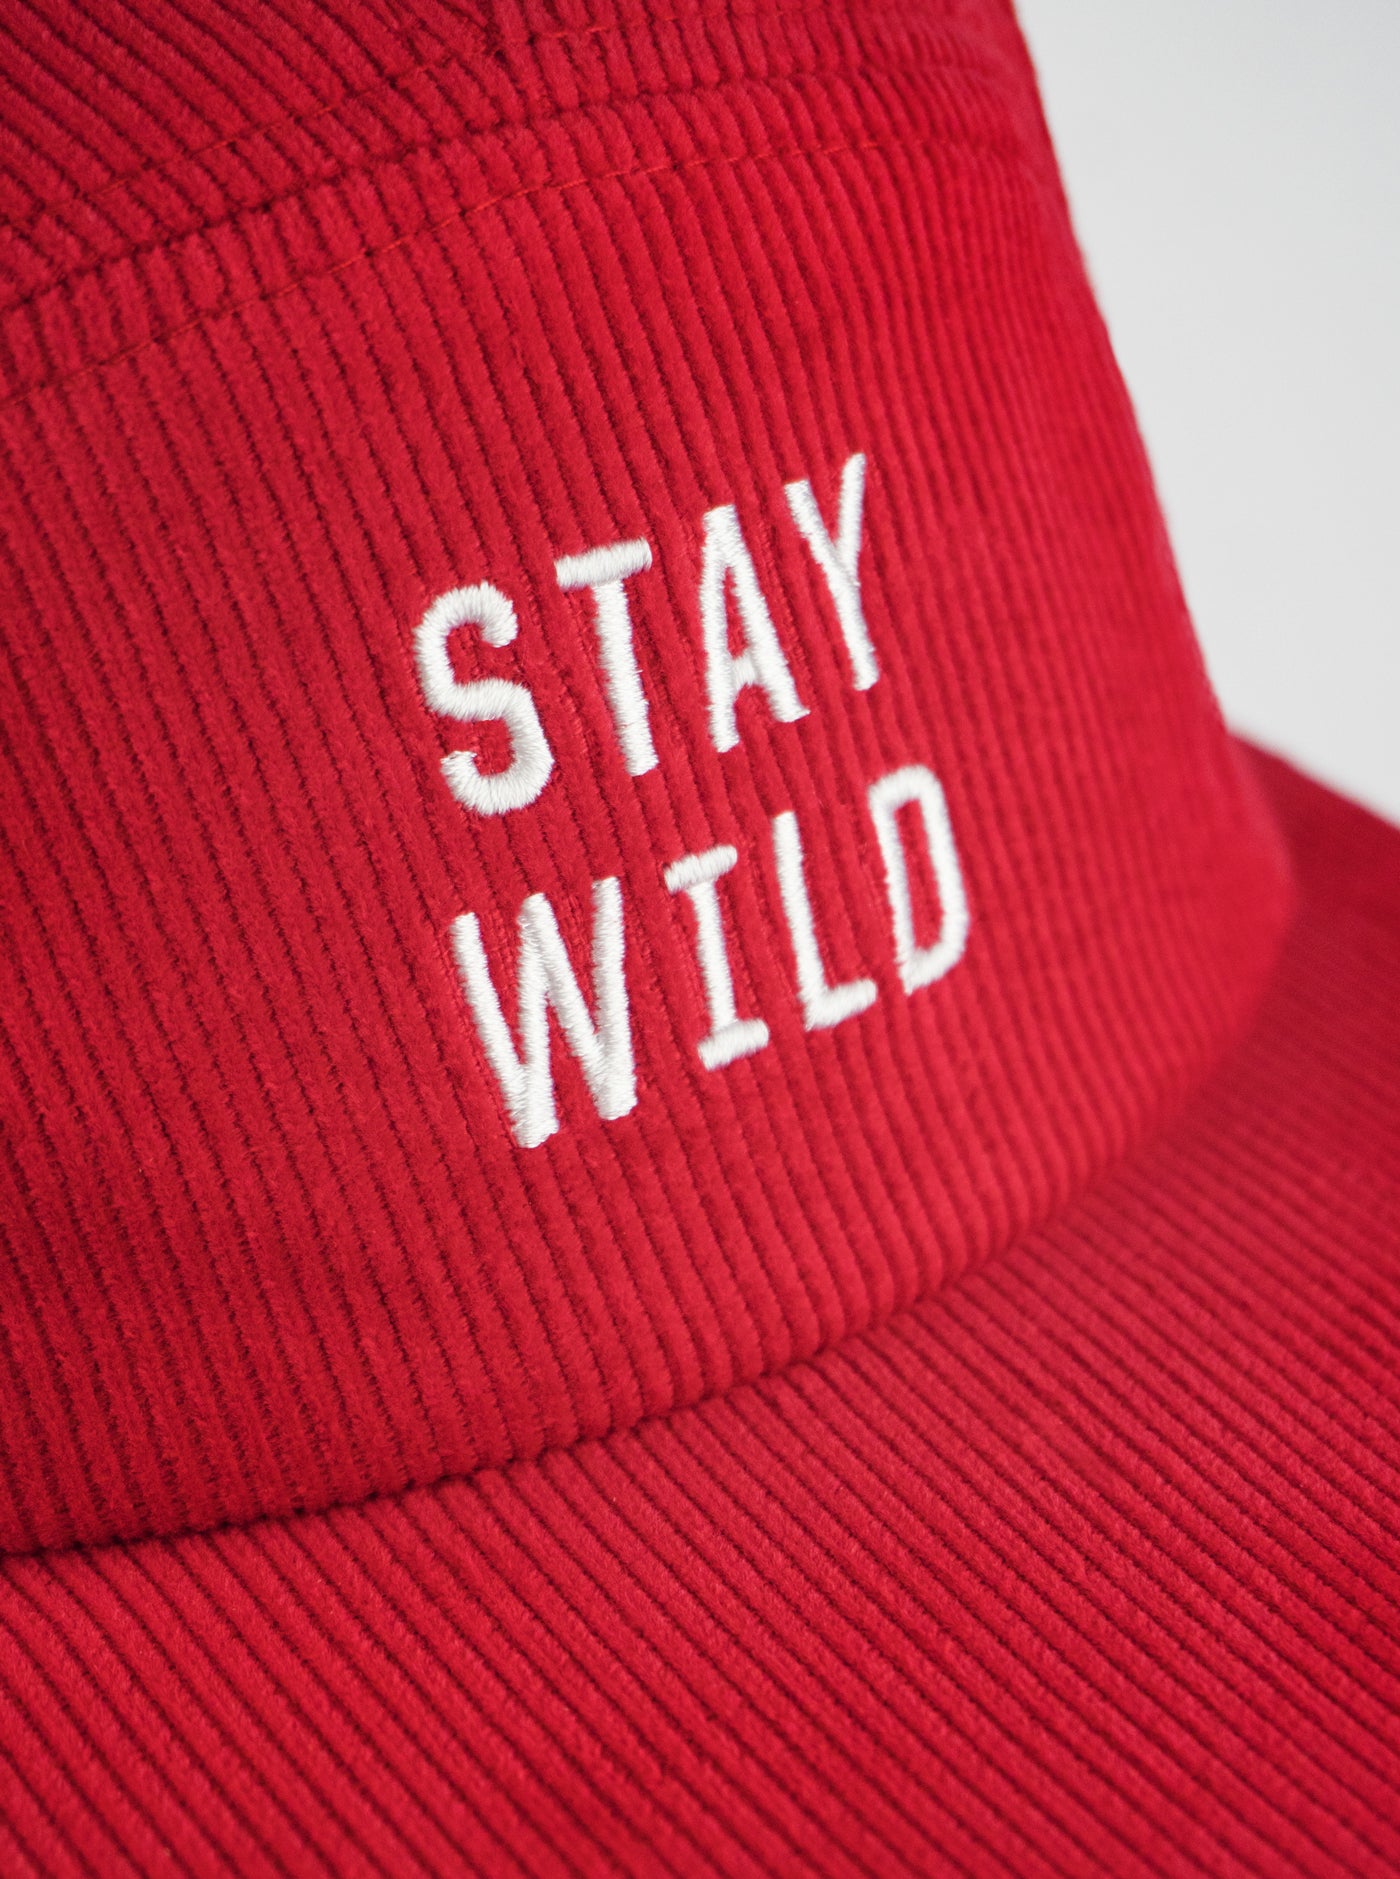 Corduroy Camper Hat - Stay Wild